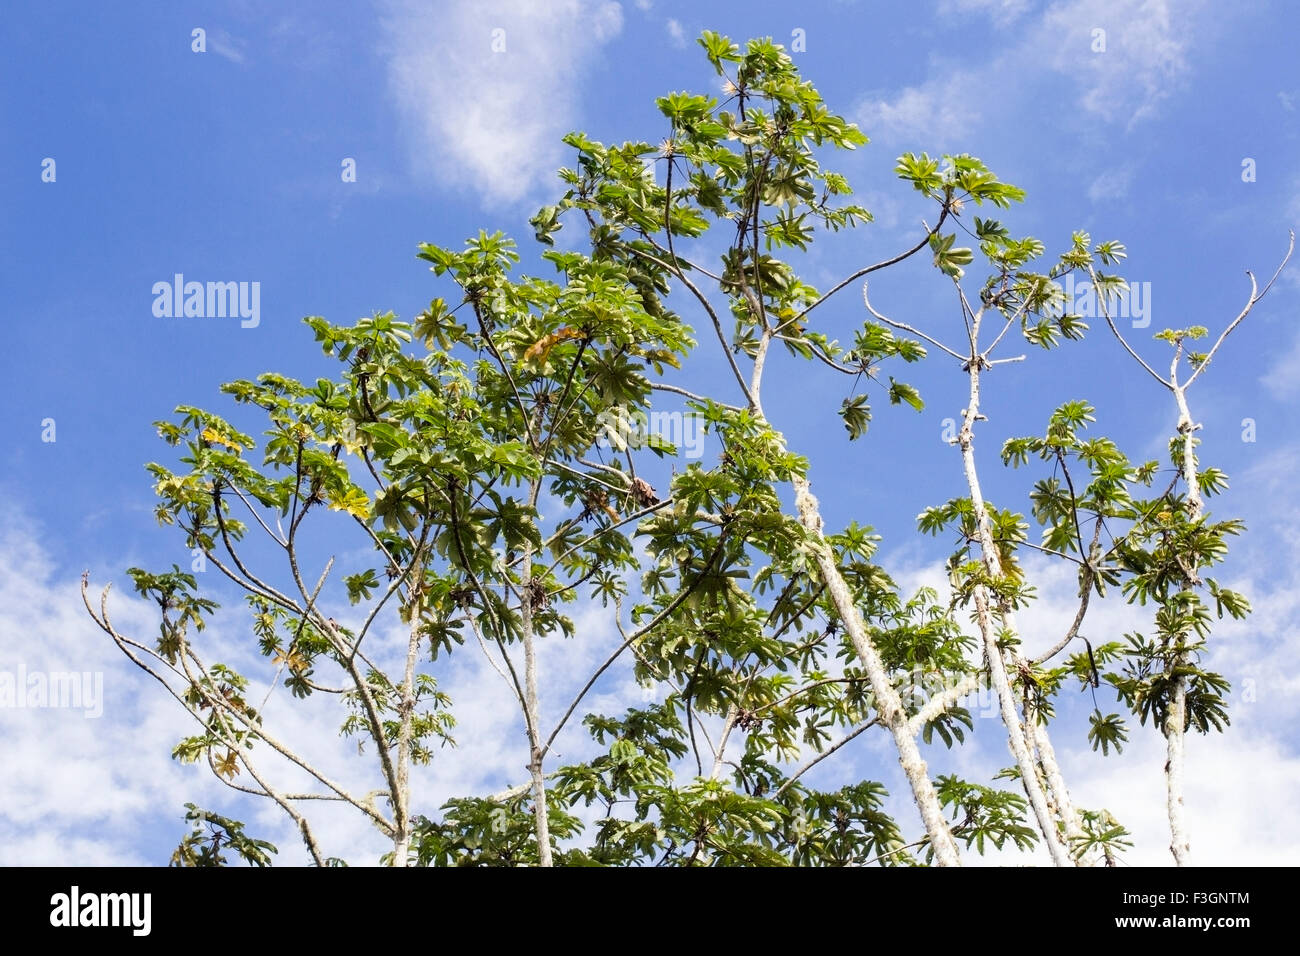 Cecropia tree in rainforest jungle, Ecuador, South America Stock Photo